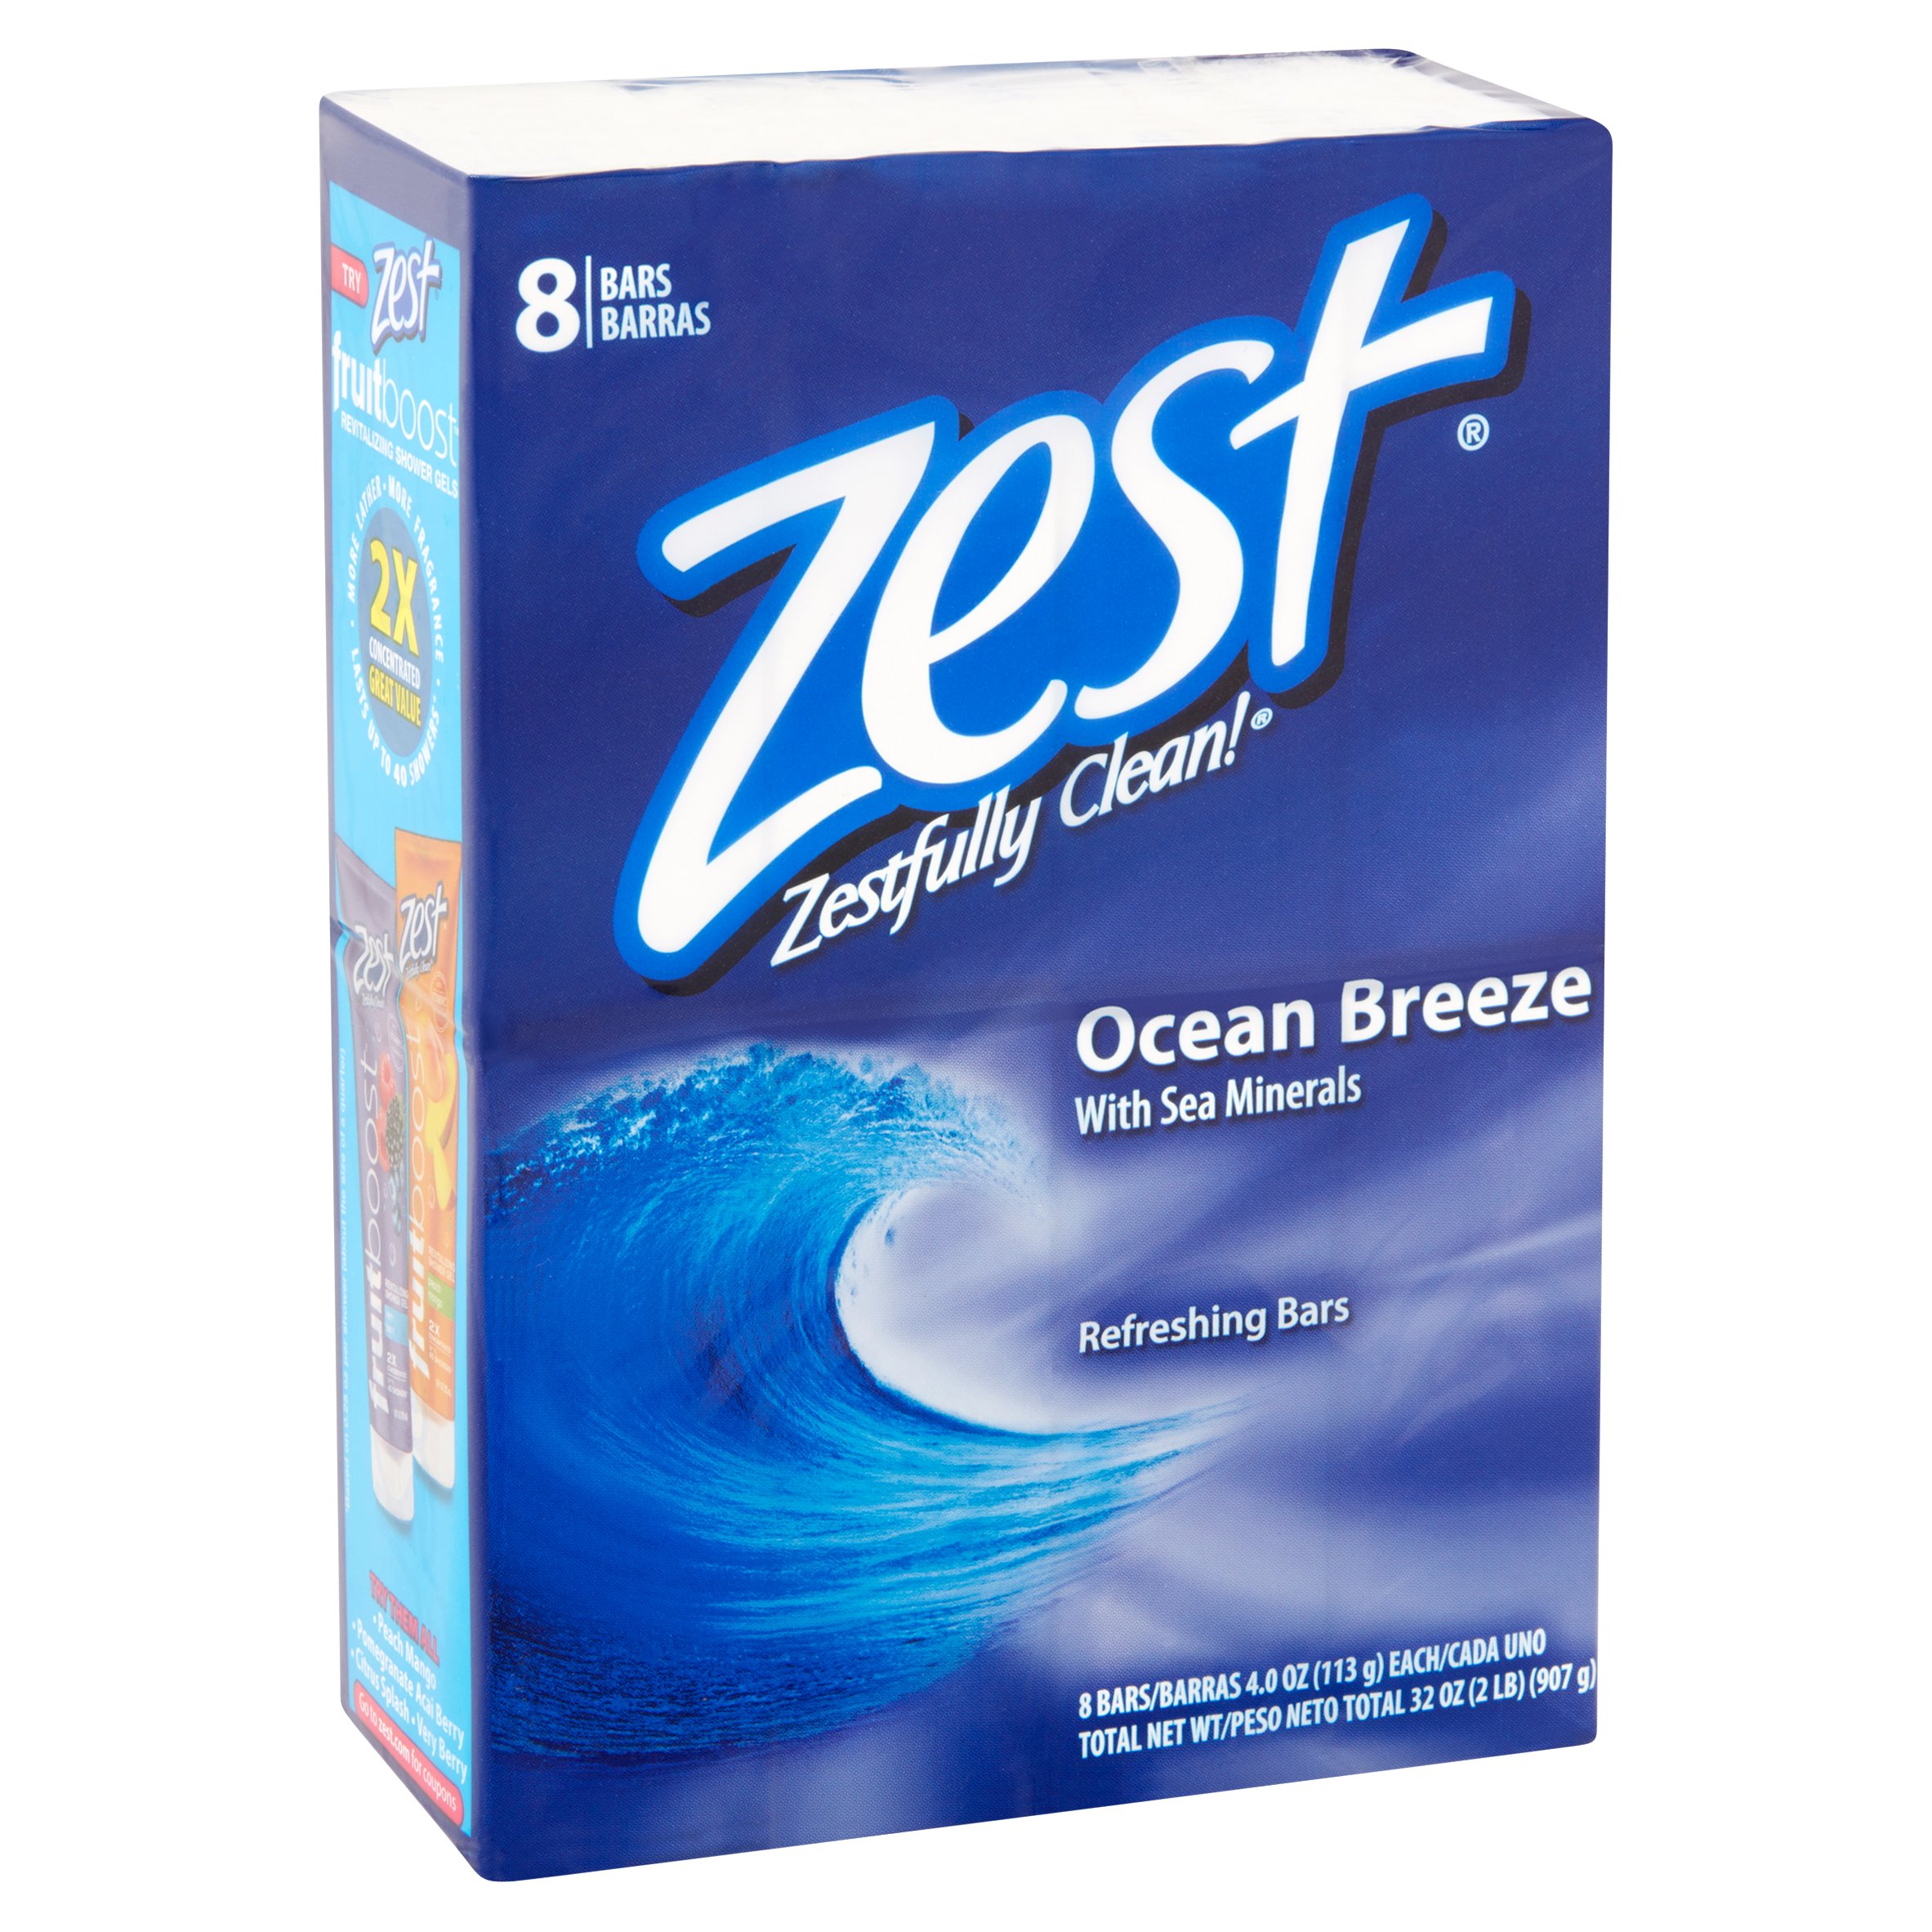 Zest Zestfully Clean! Ocean Breeze Refreshing Bars, 4.0 oz, 8 count - image 2 of 4